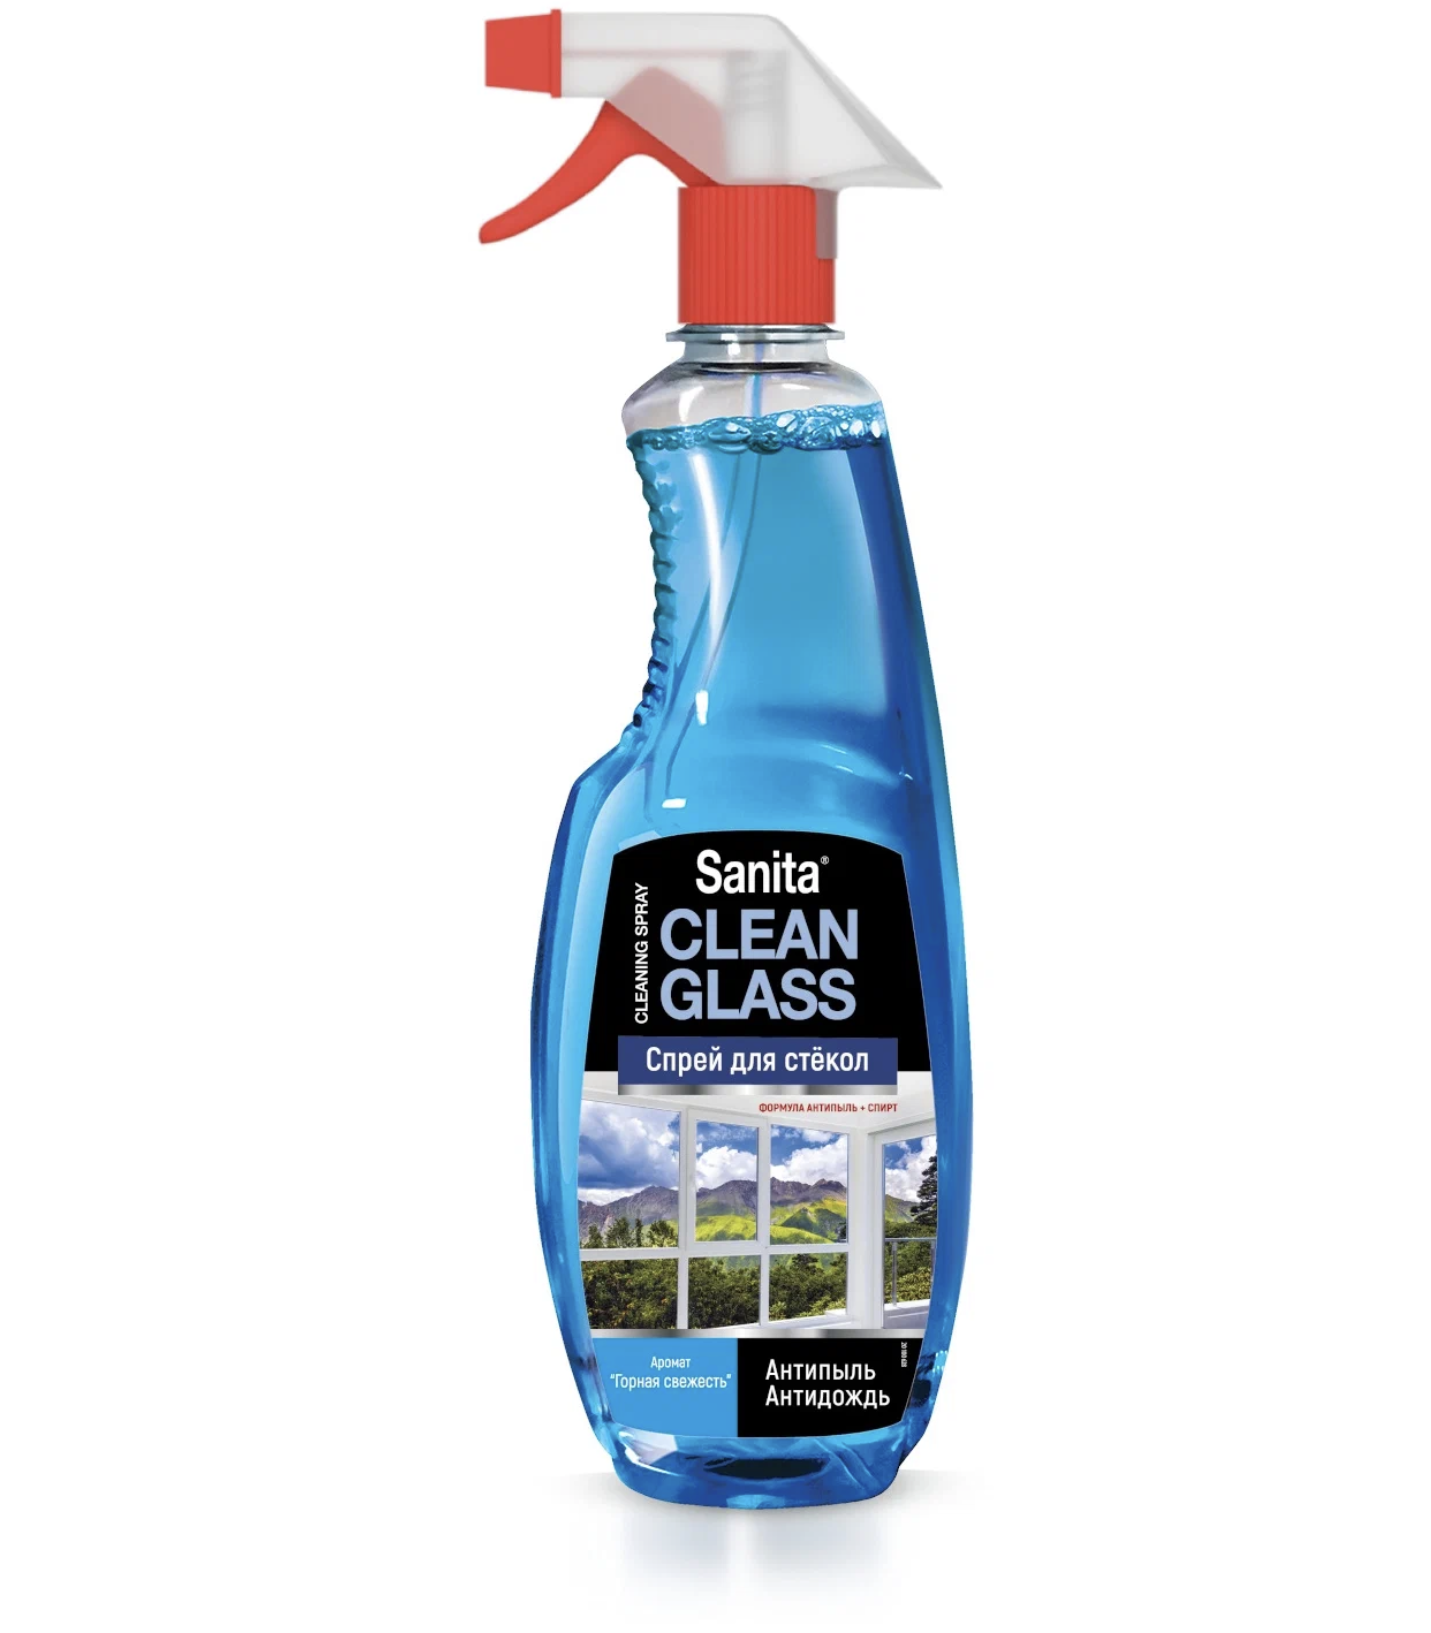 картинка Санита / Sanita - Спрей для стекол Clean Glass Антипыль Горная свежесть 500 мл